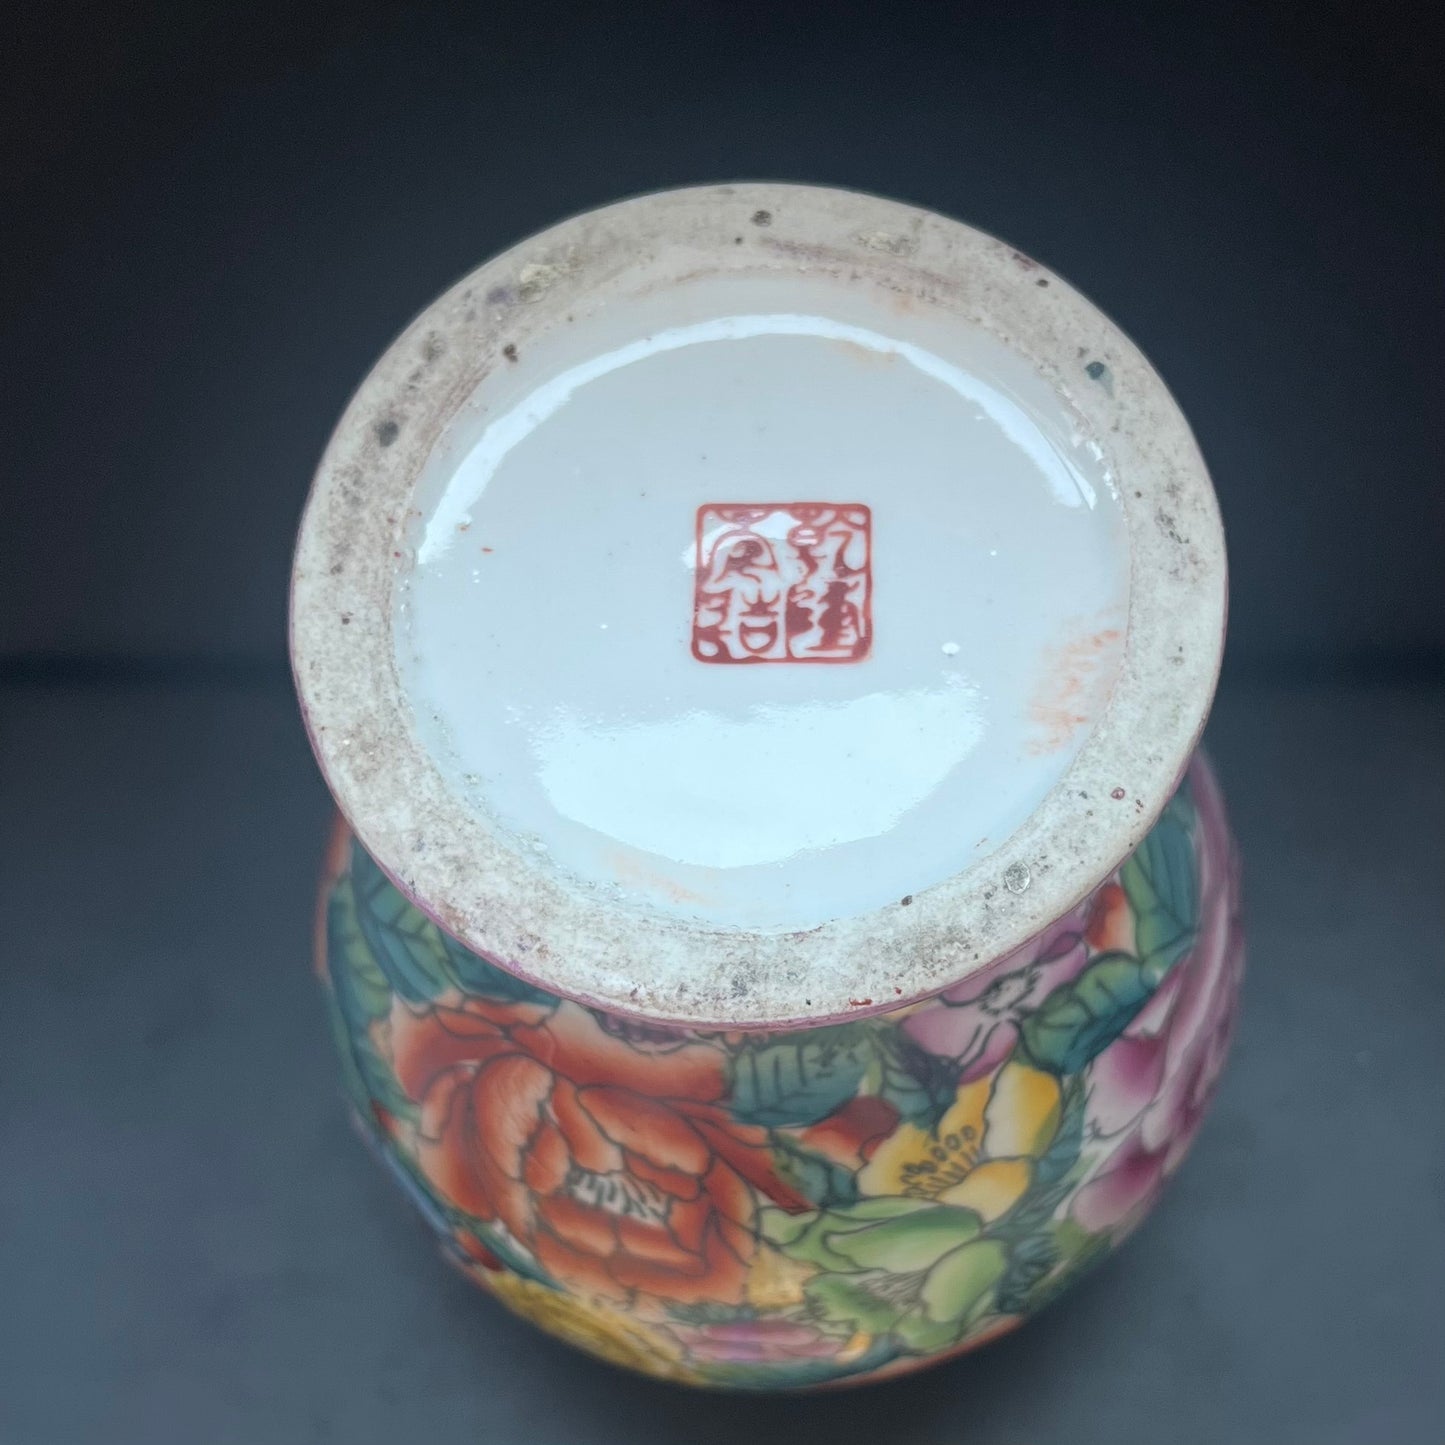 20 世纪末期中国景德镇粉彩百花纹罐或花瓶，带有伪造的乾隆款